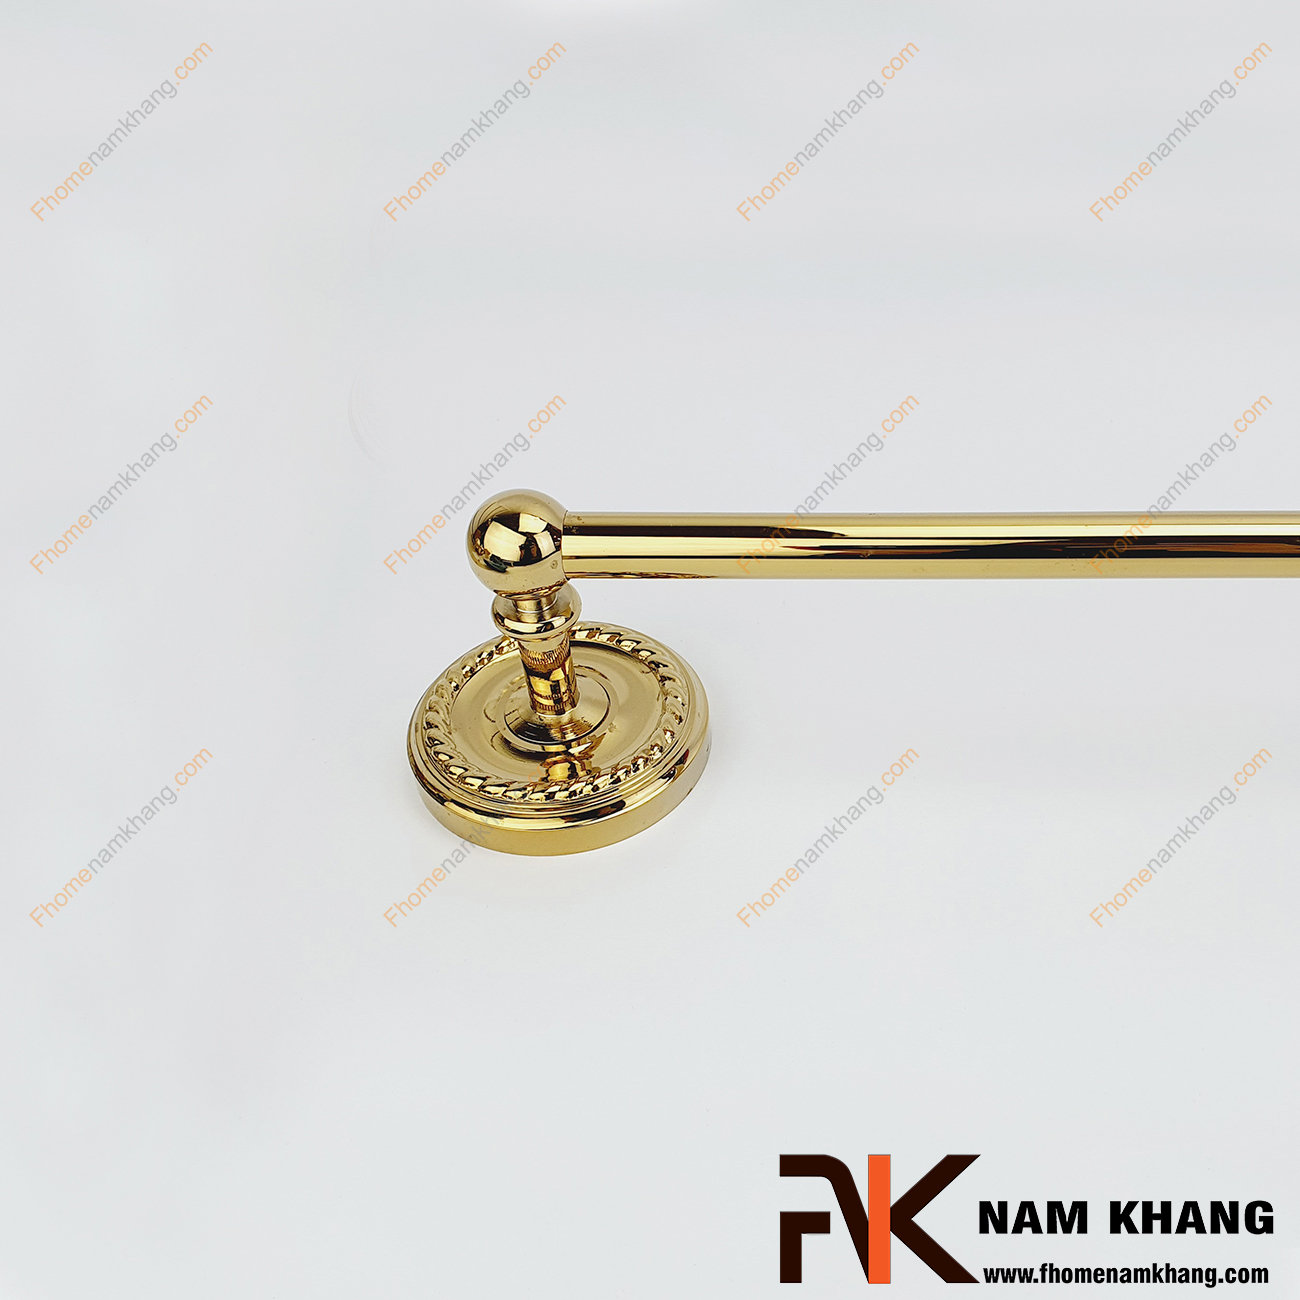 Treo khăn thẳng bằng đồng vàng bóng đế hoa văn NKTK-001V mẫu treo khăn dạng 1 thanh tròn thẳng ấn tượng với màu vàng bóng cao cấp.